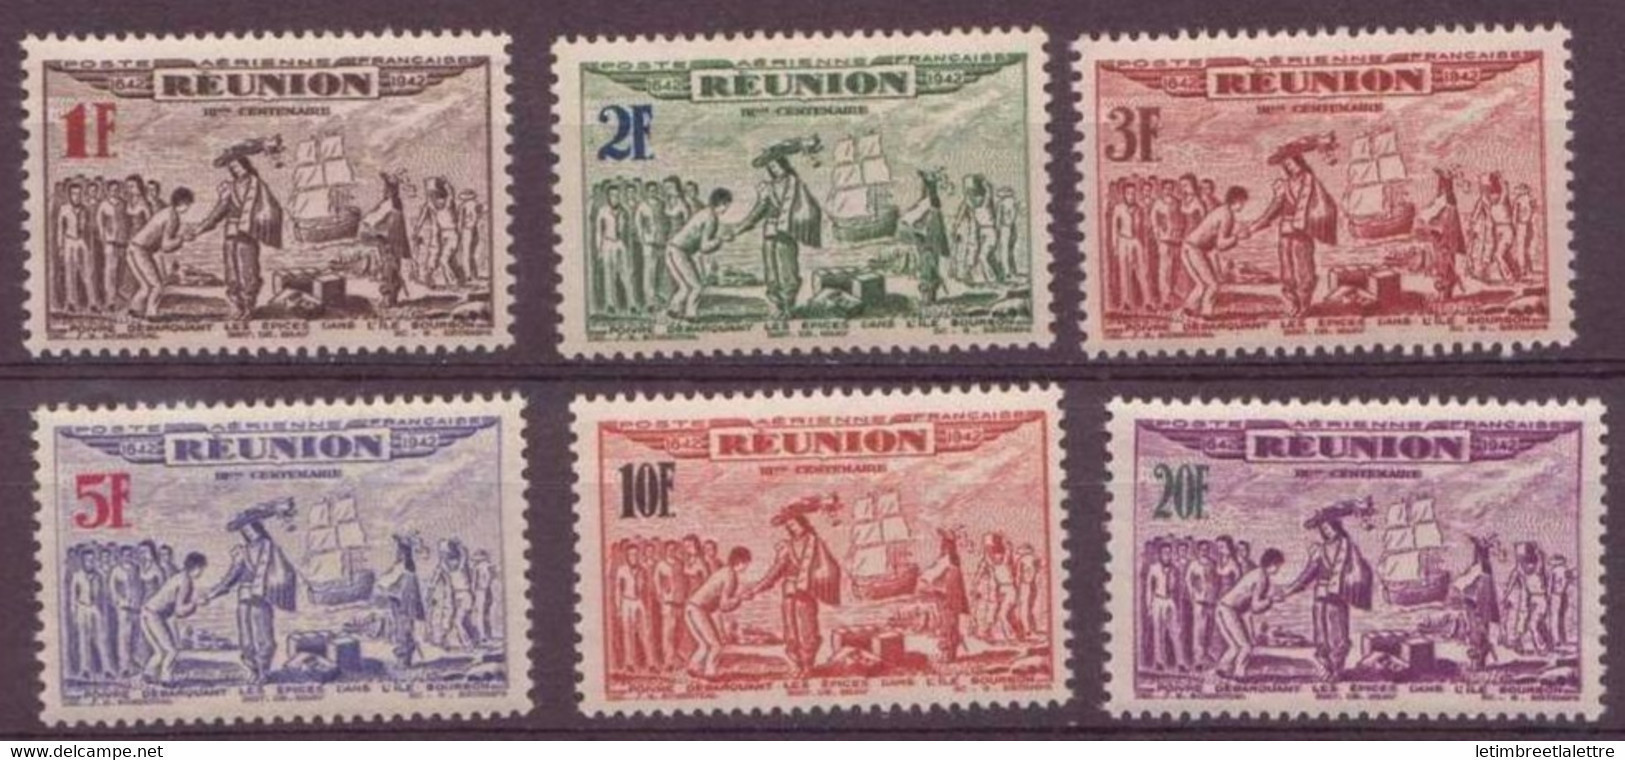 Réunion - Poste Aérienne - YT N° 18 à 23 ** - Neuf Sans Charnière - 1943 - Luchtpost